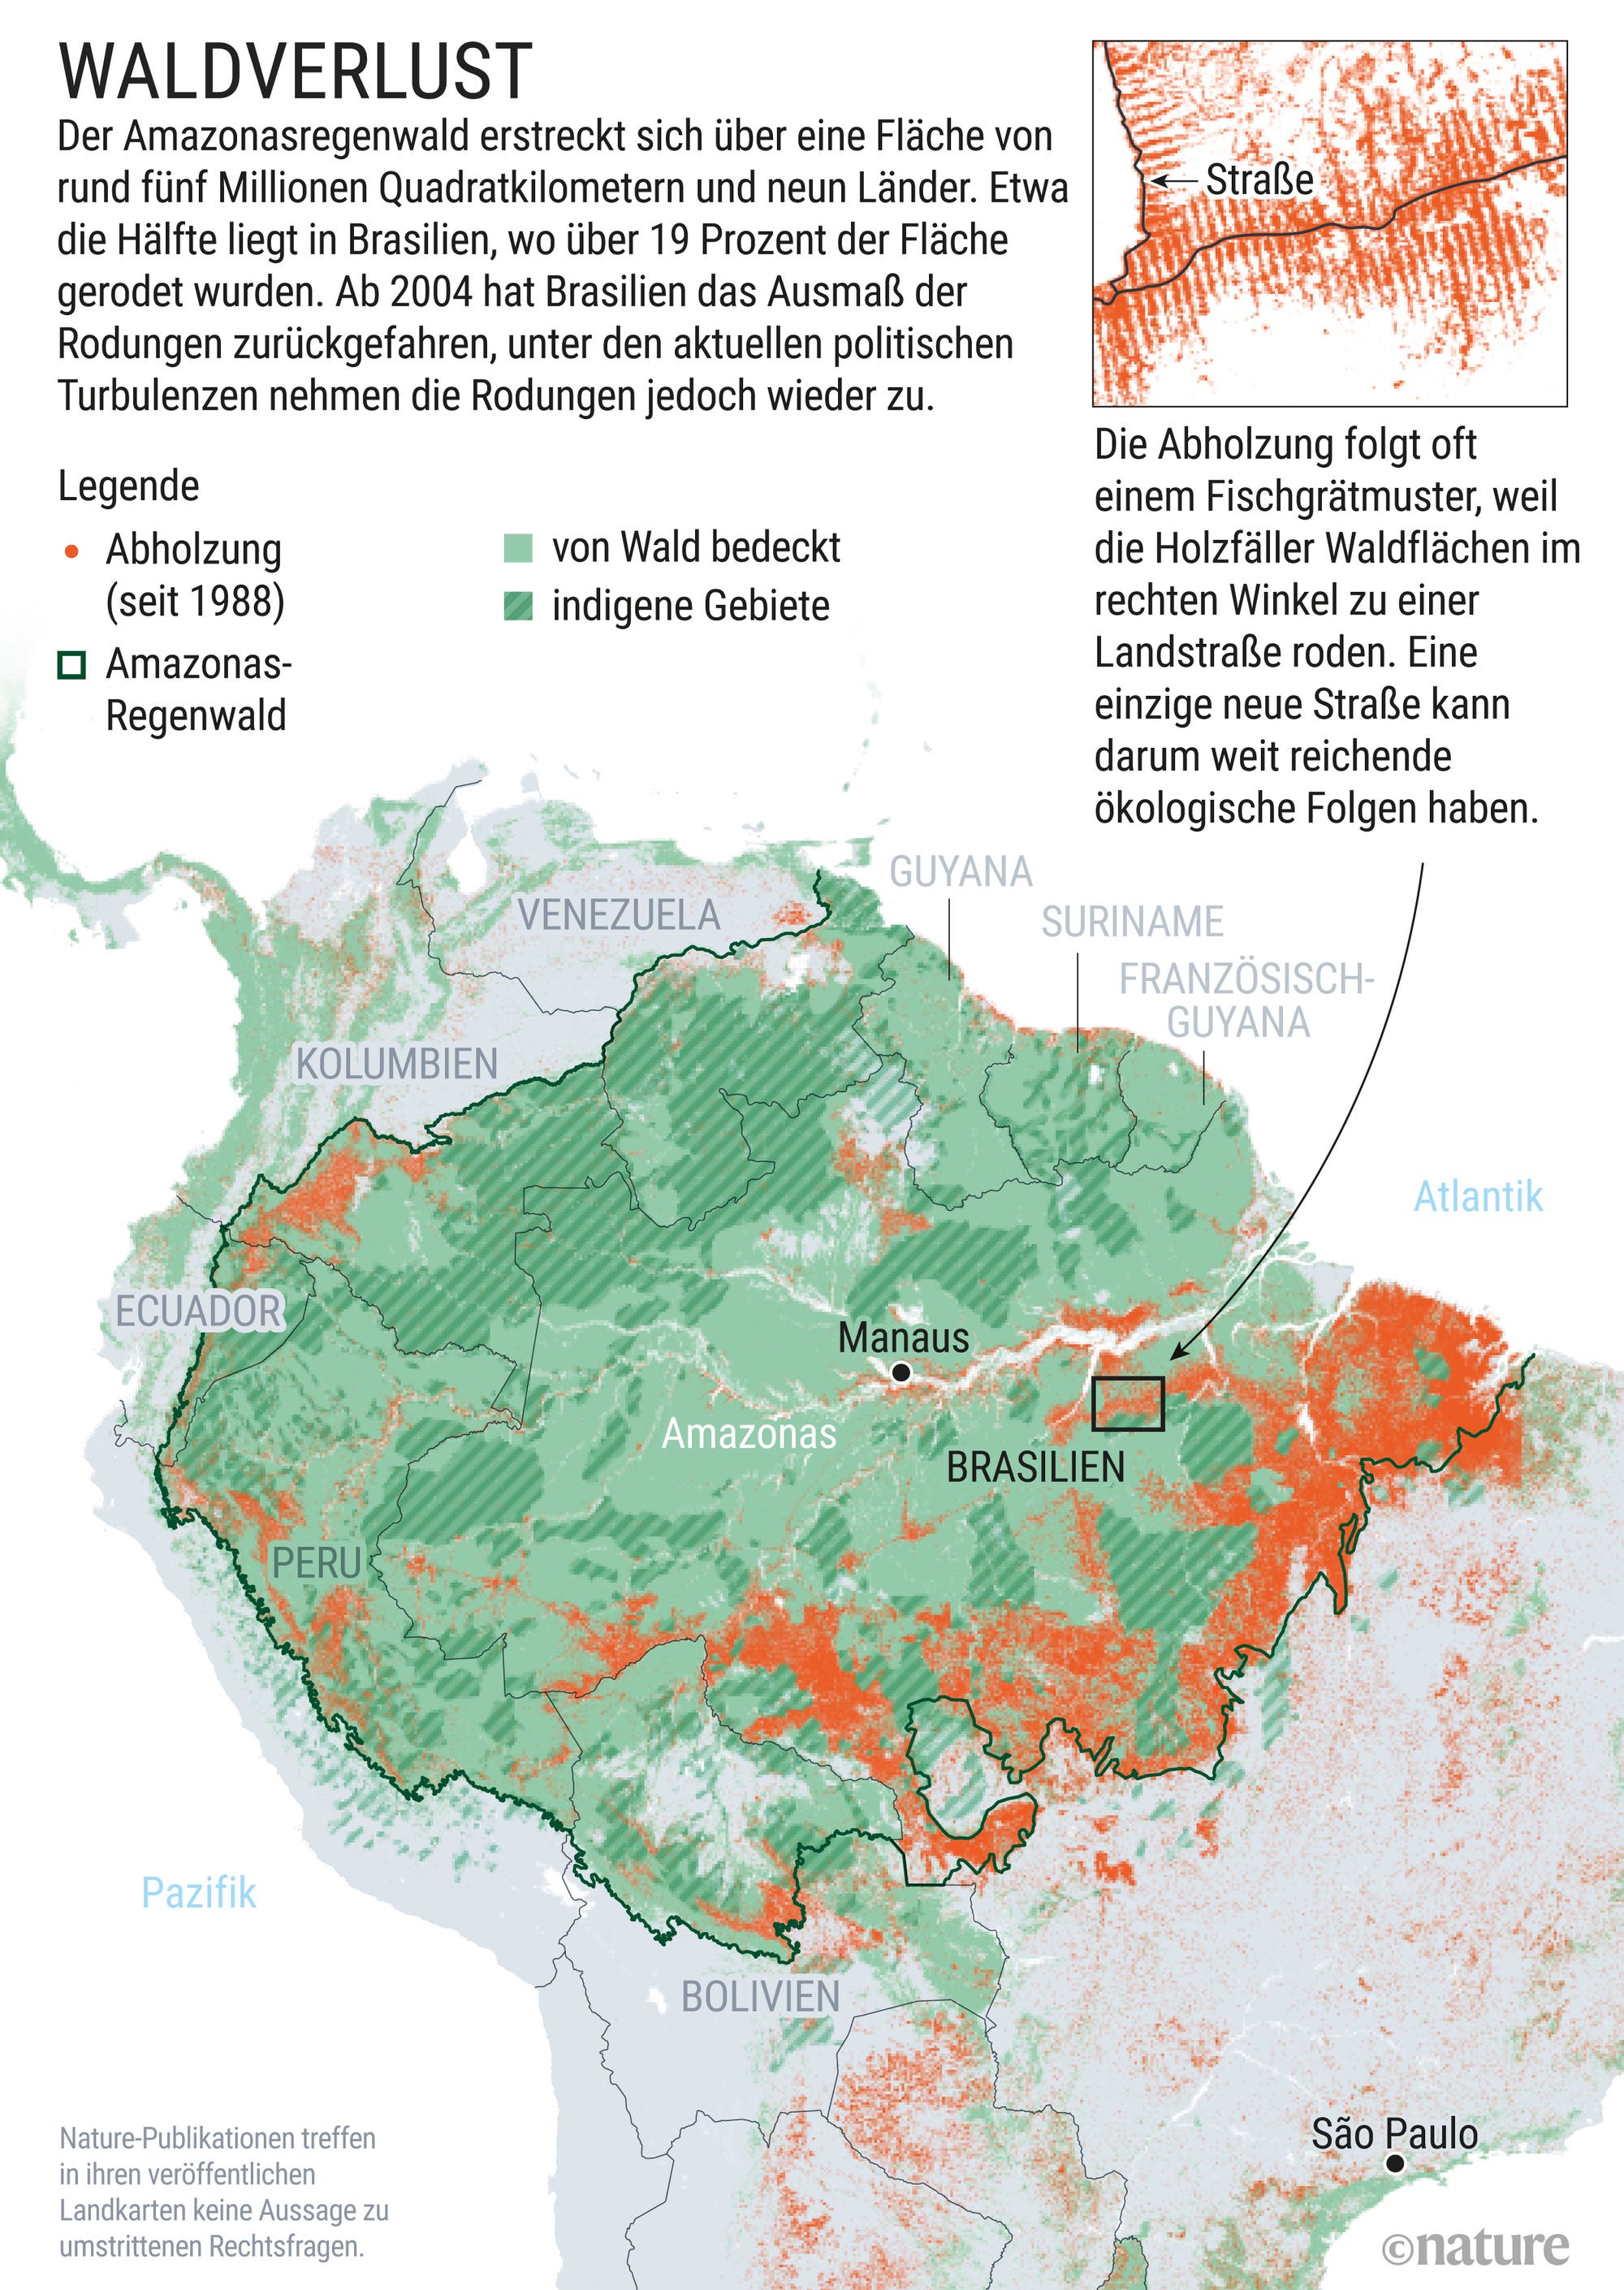 Große Teile des Regenwald-Ökosystems sind bereits abgeholzt